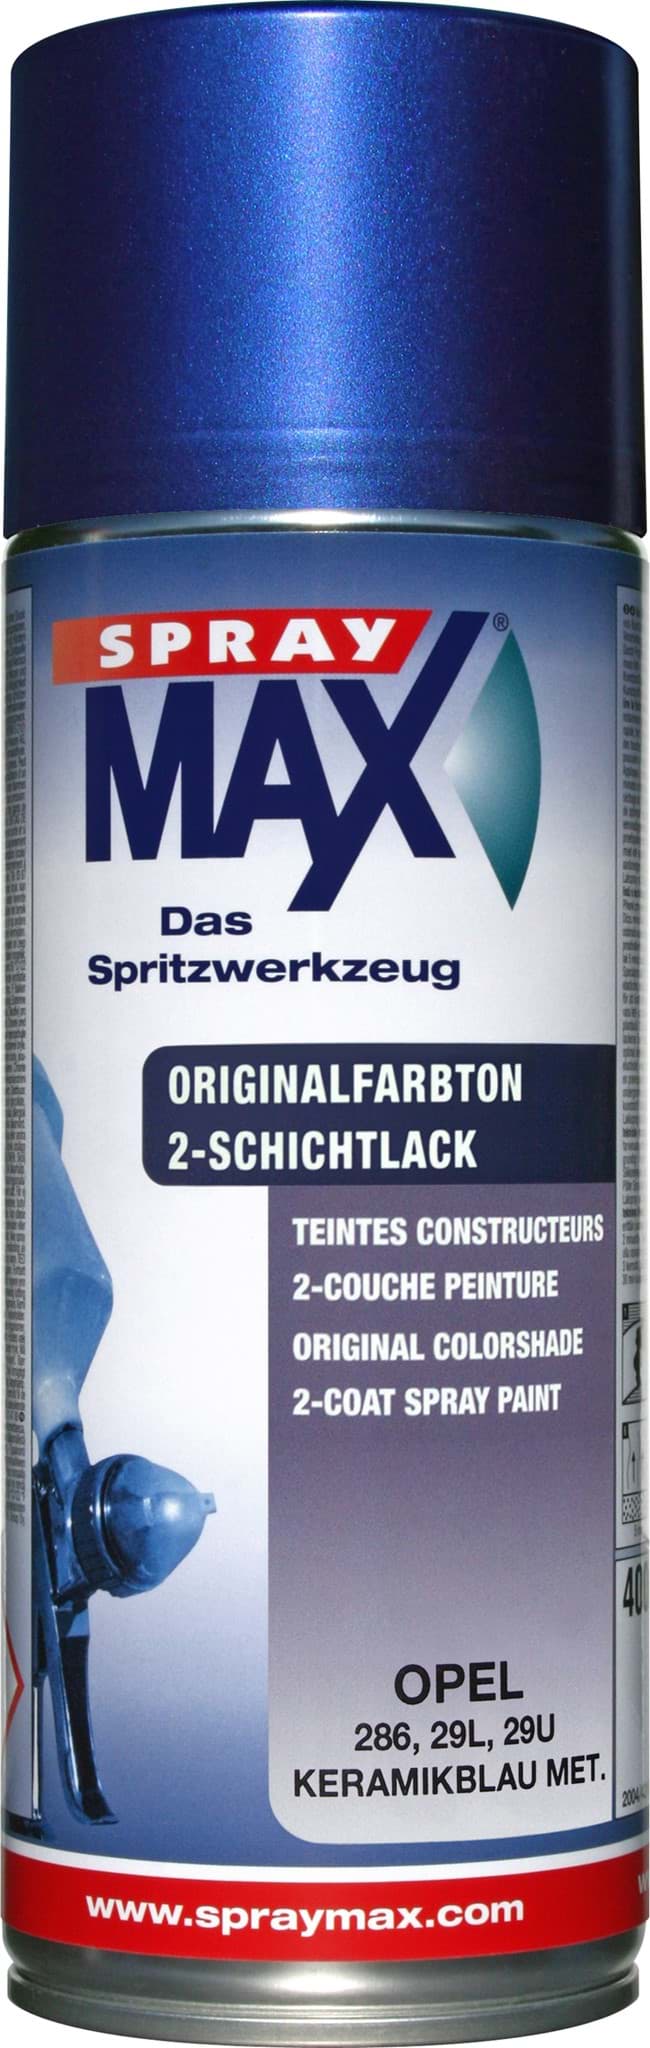 Picture of SprayMax Originalfarbton für Opel 286 keramikblau met.